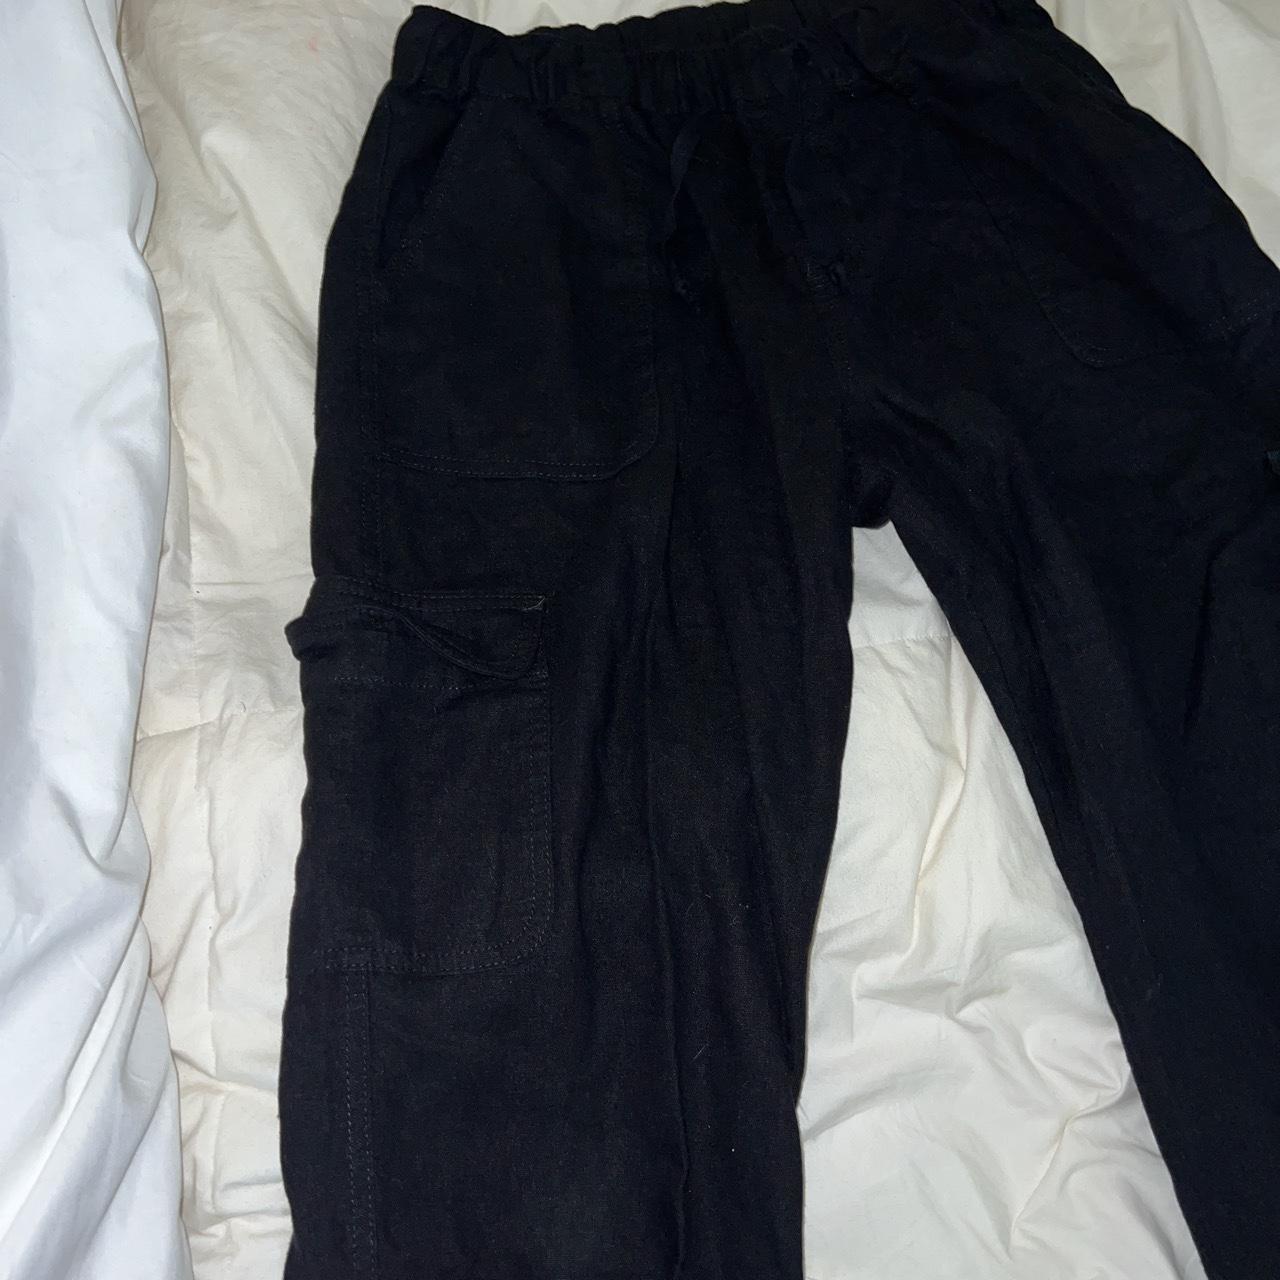 Black and grey linen cargo pants - Depop